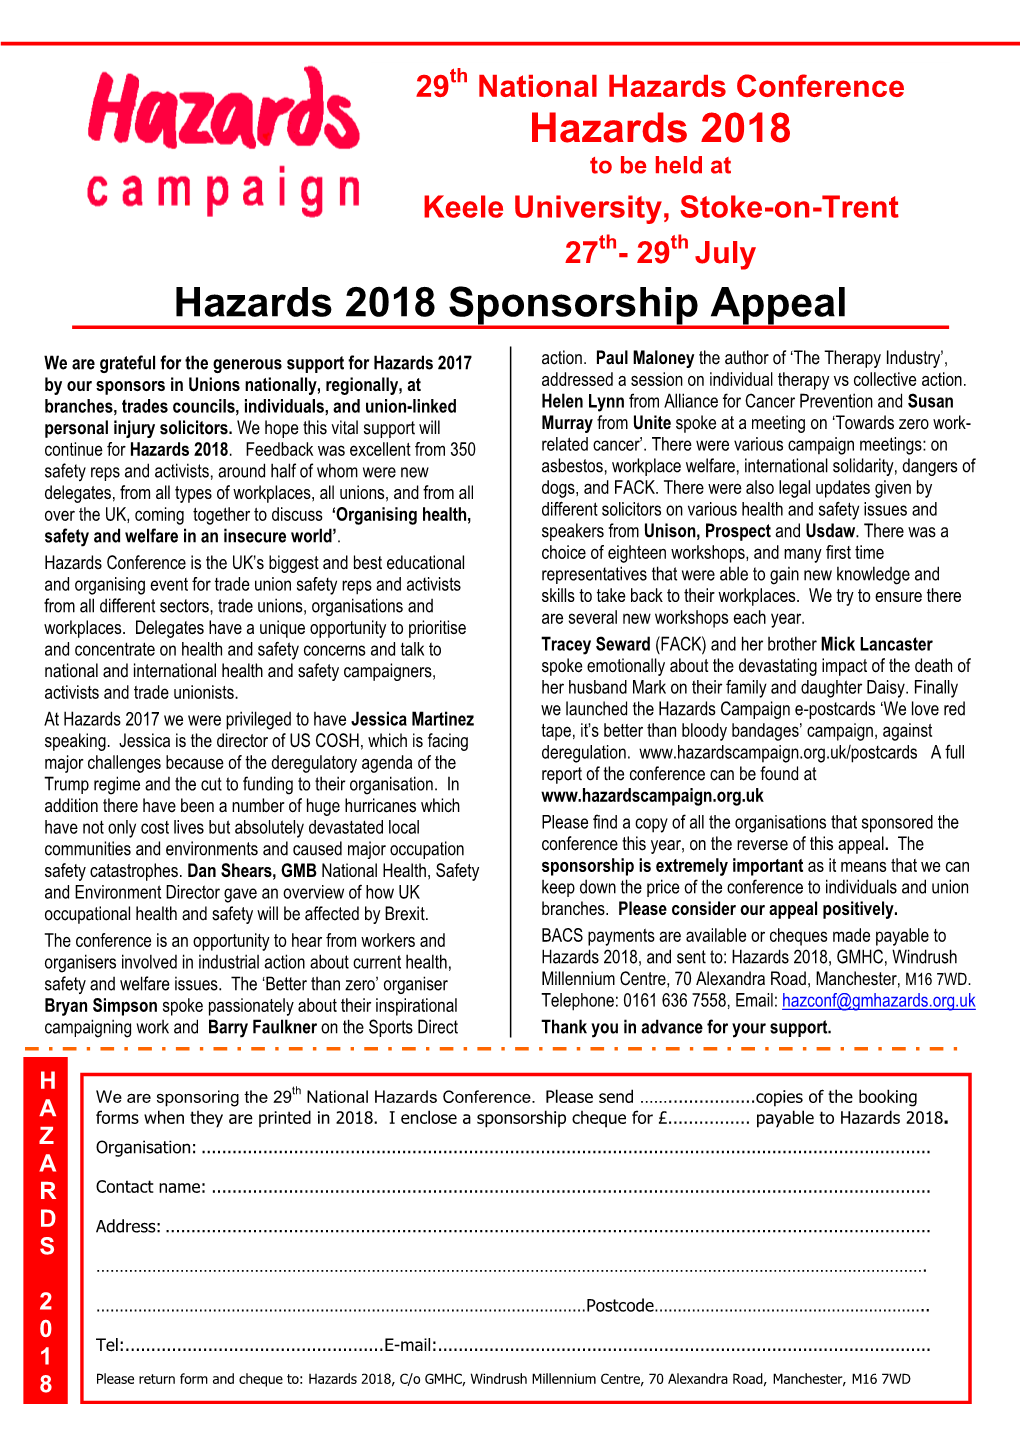 Hazards Conference 2018 Sponsorship Appeal